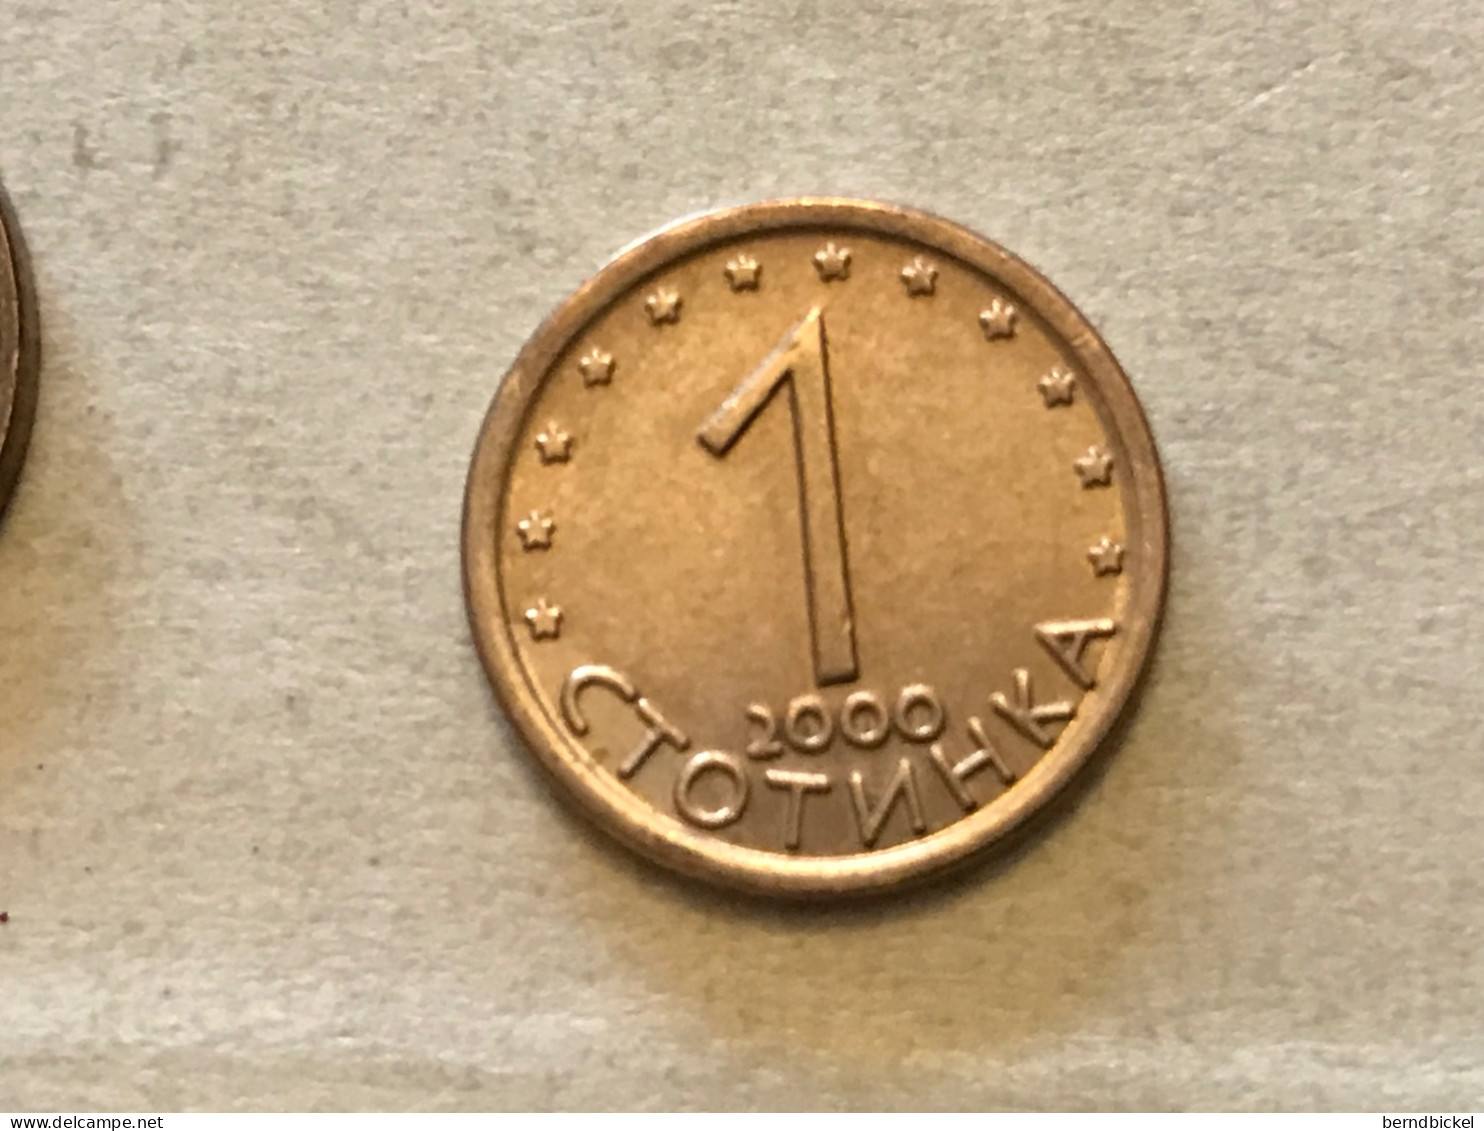 Münze Münzen Umlaufmünze Bulgarien 1 Stotinka 2000 - Bulgarie